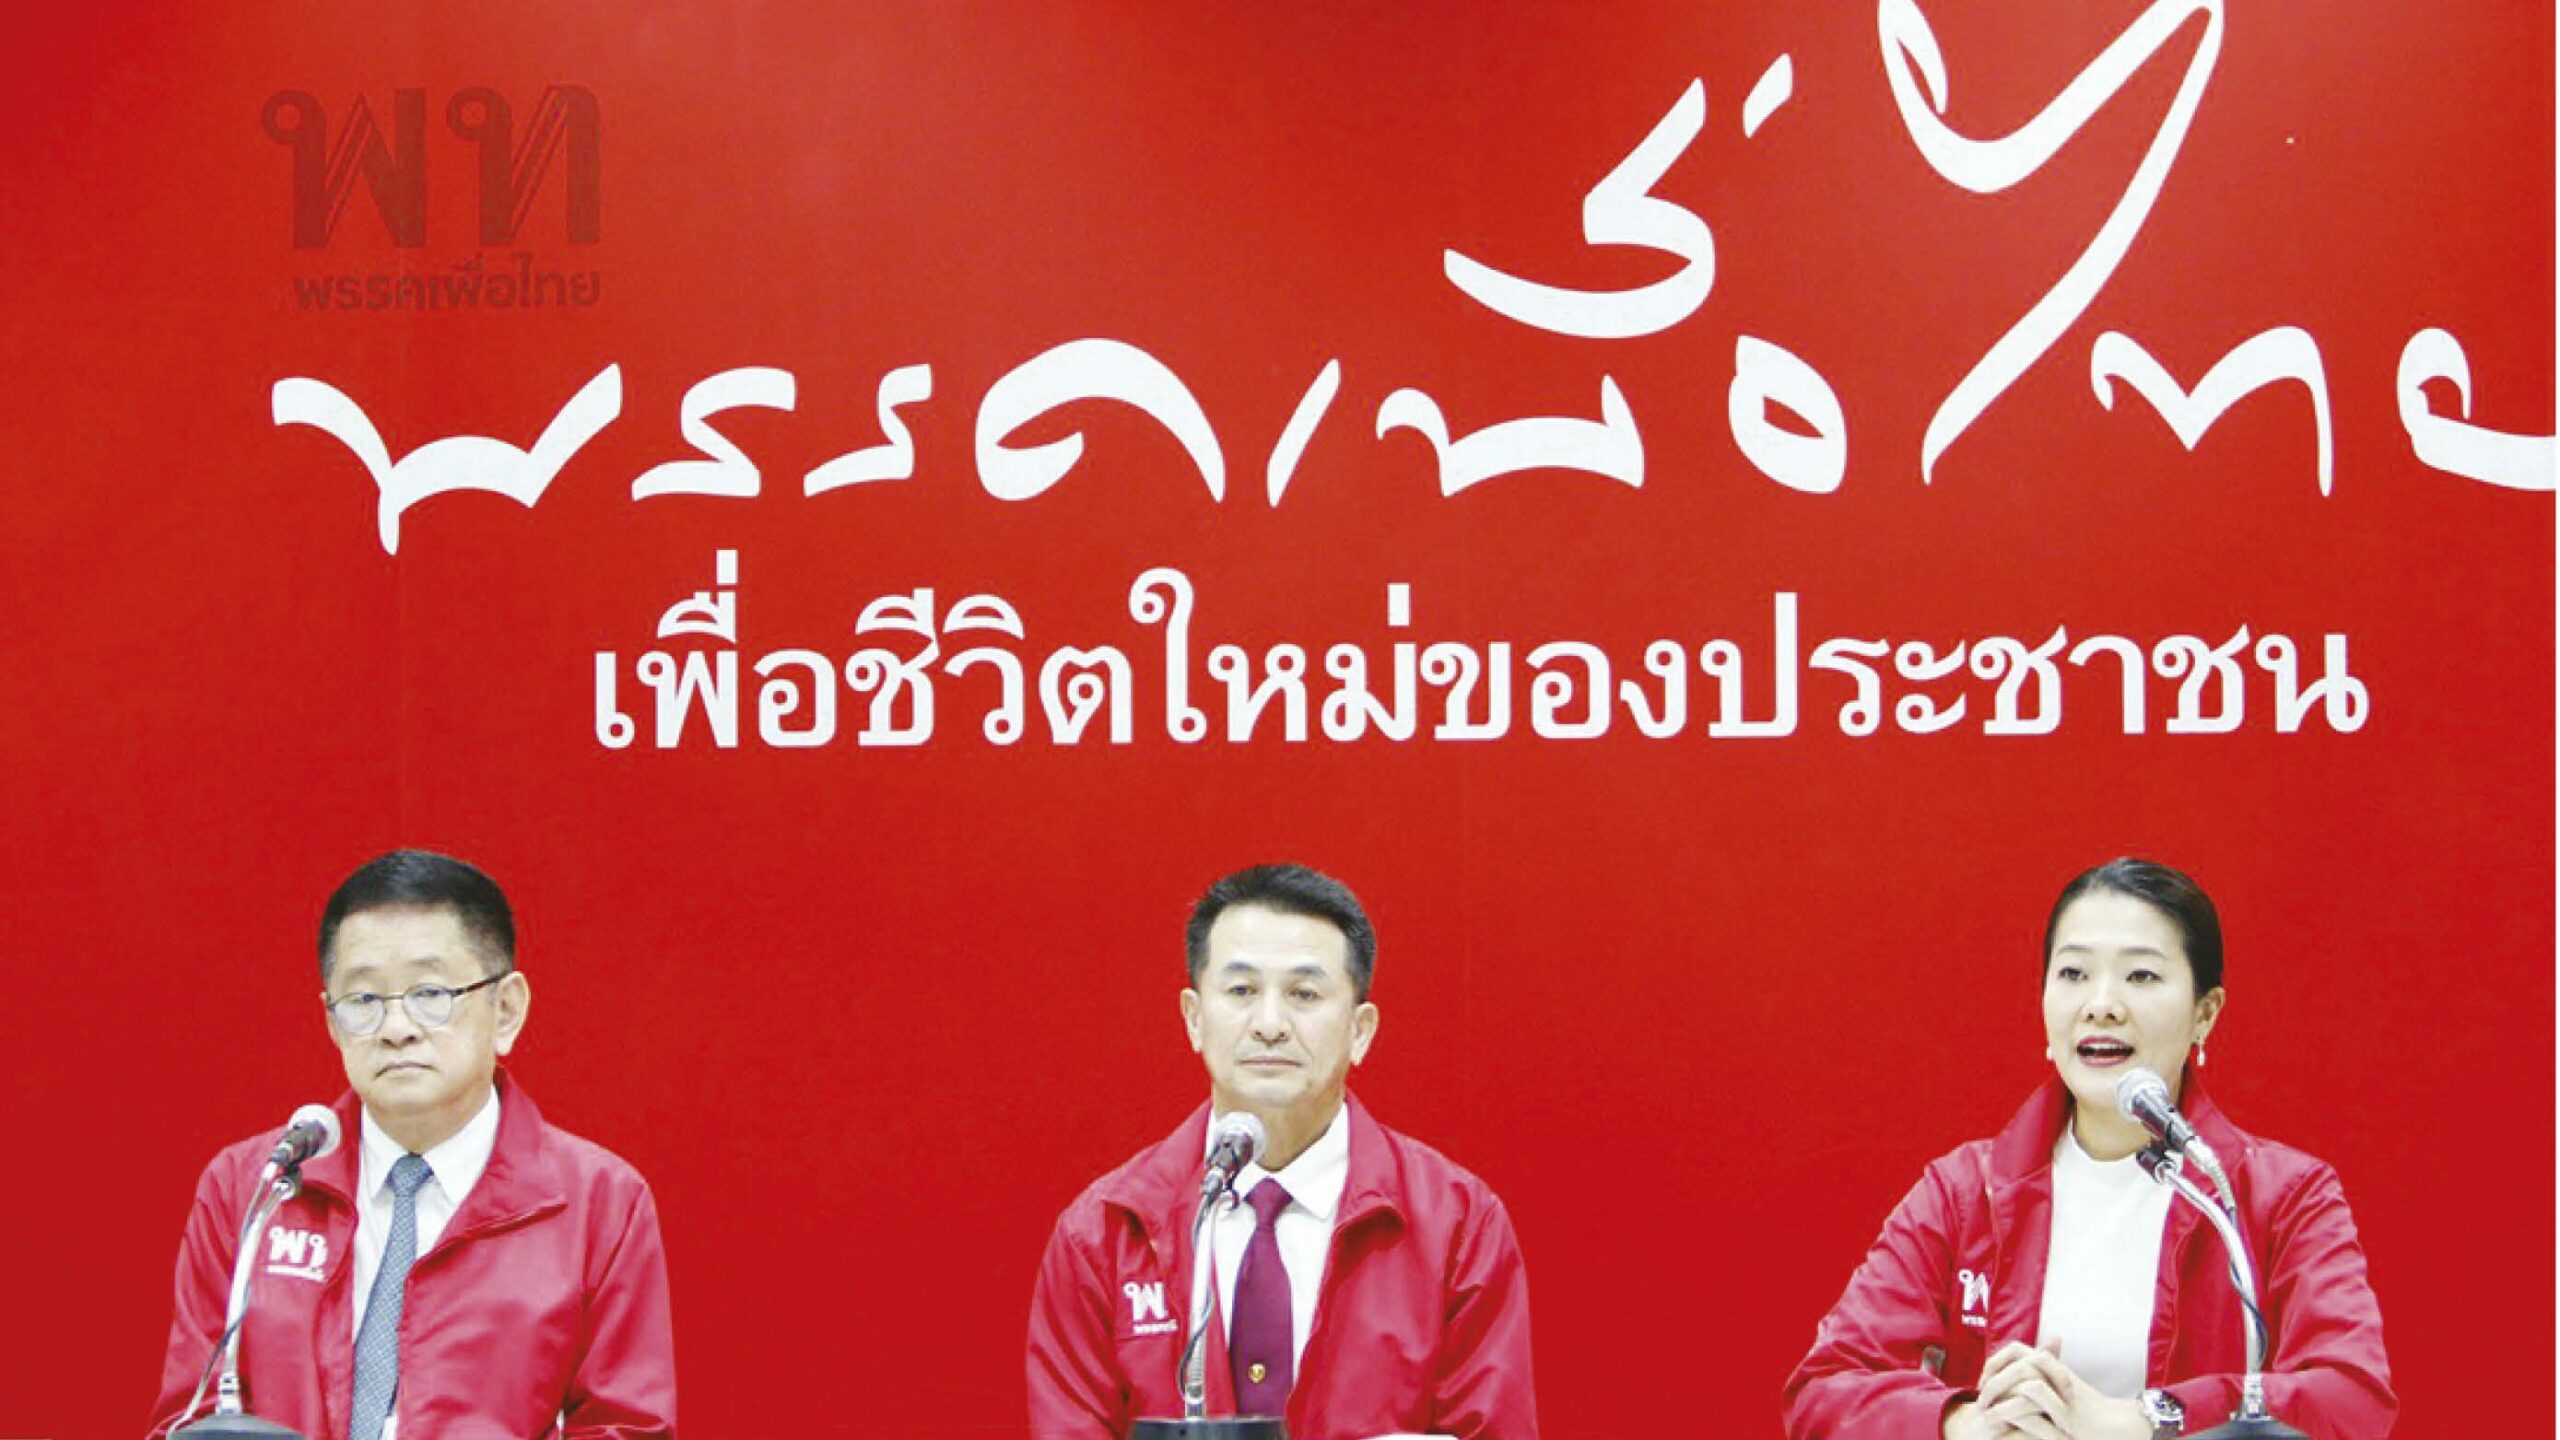 วิเคราะห์การเมือง – เส้นทาง ข่าวลือ  สกัด “แลนด์สไลด์” เพื่อไทย  มาจาก รัฐบาล